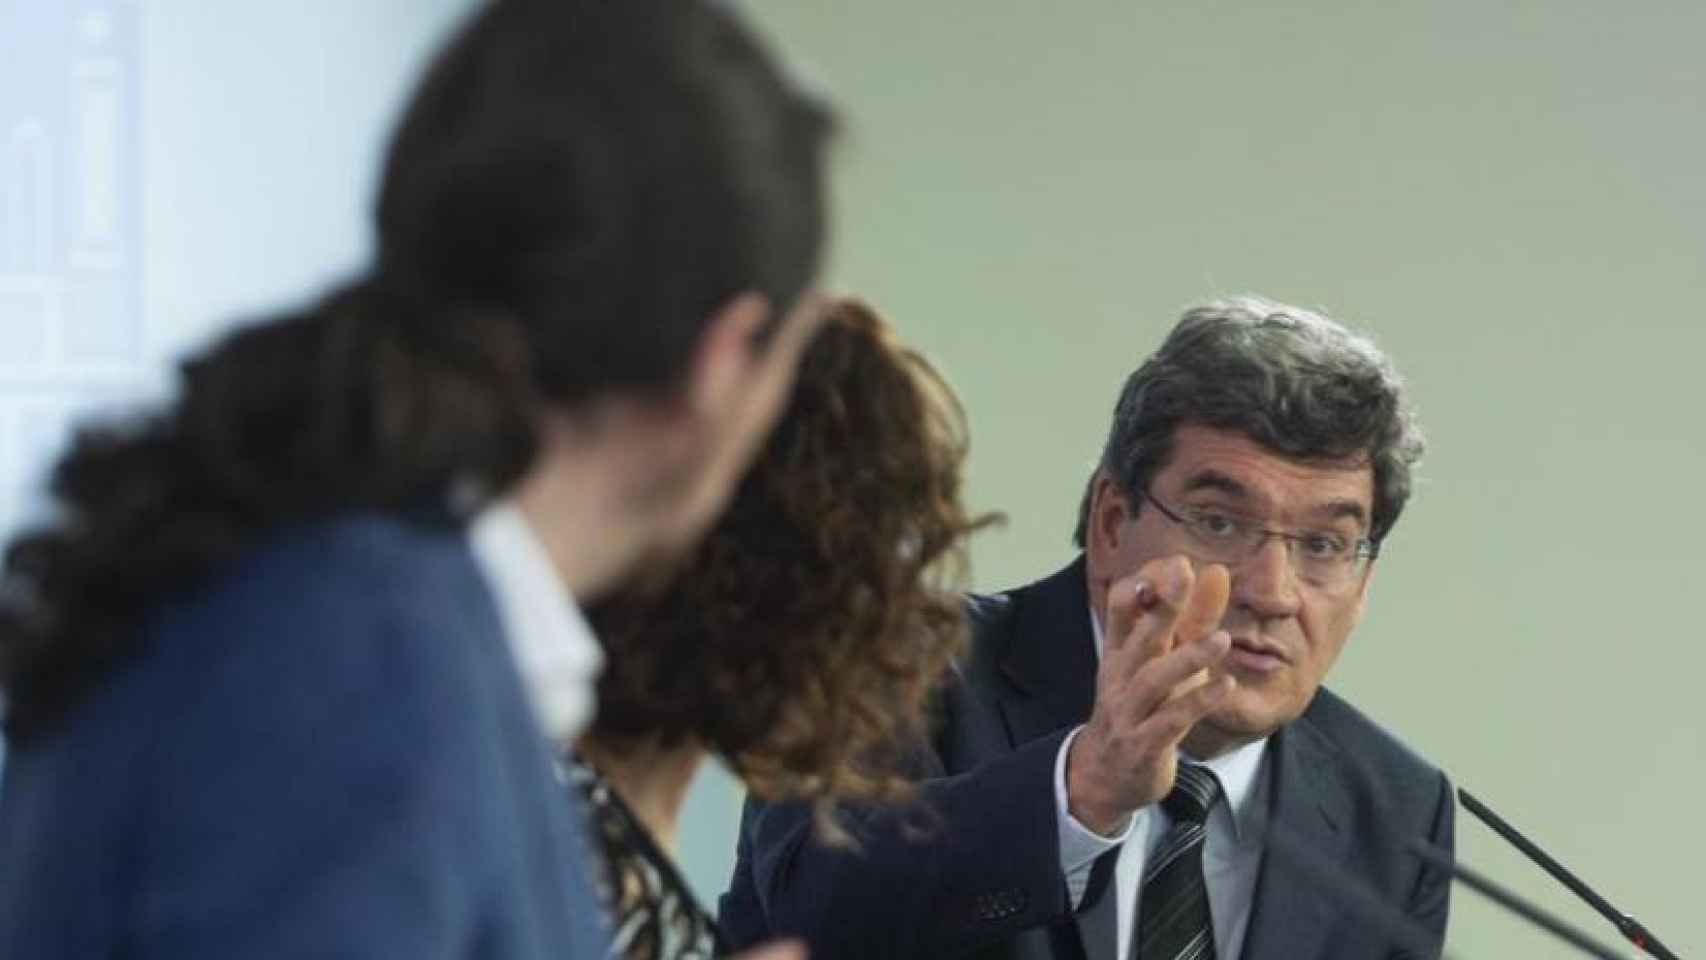 El ministro de Seguridad Social, José Luis Escrivá, la ministra de Hacienda, María Jesús Montero, y el vicepresidente segundo del Gobierno, Pablo Iglesias, en una imagen de archivo.